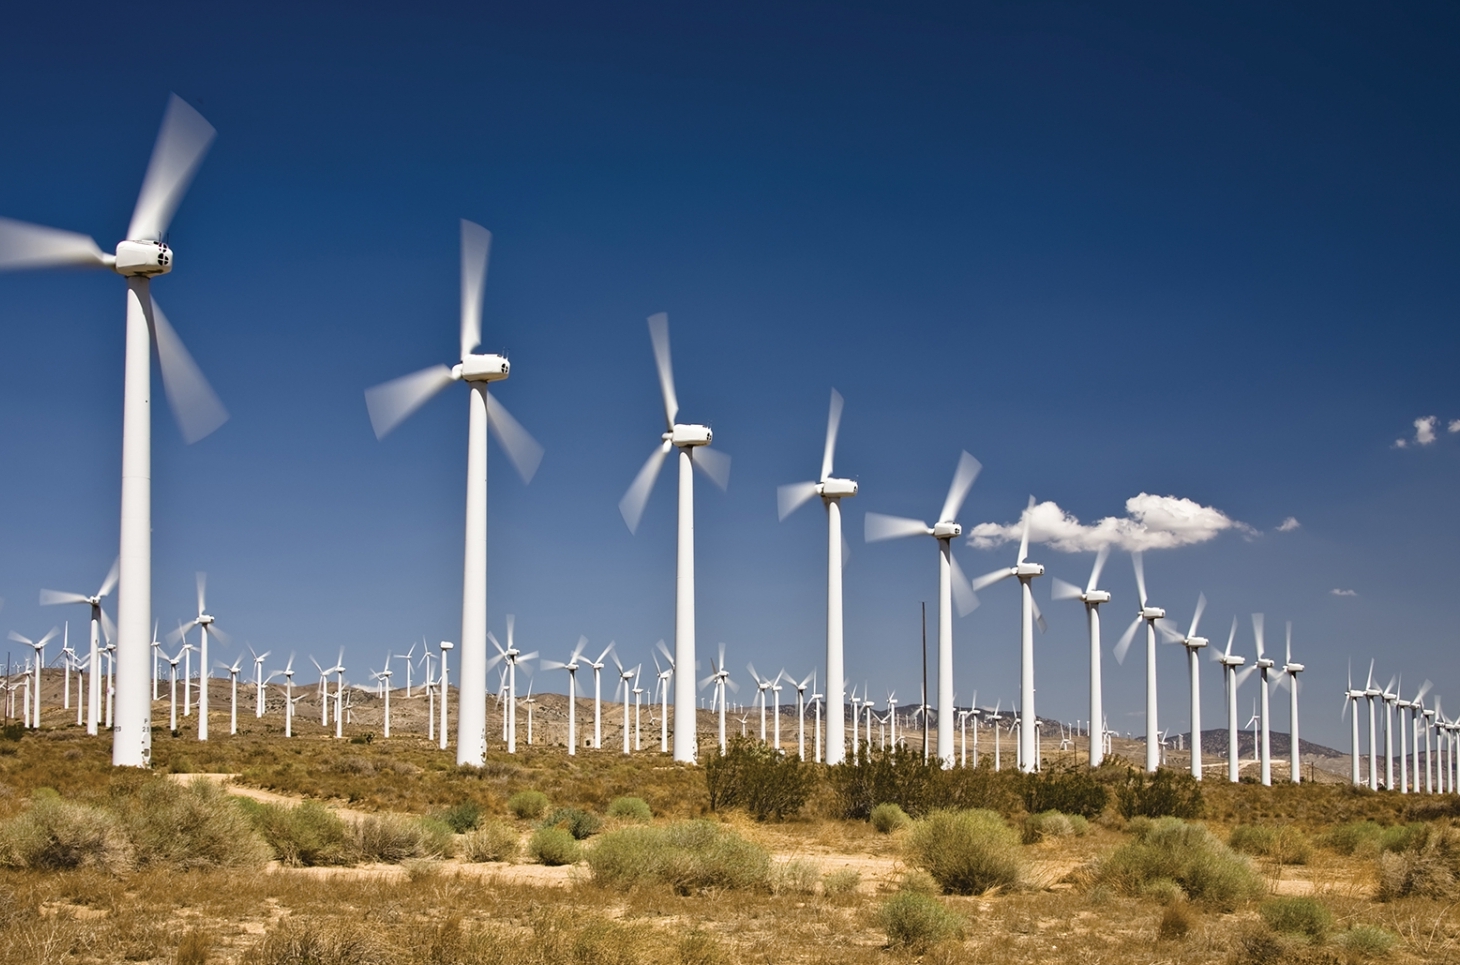 Turbine gió hoạt động như thế nào?